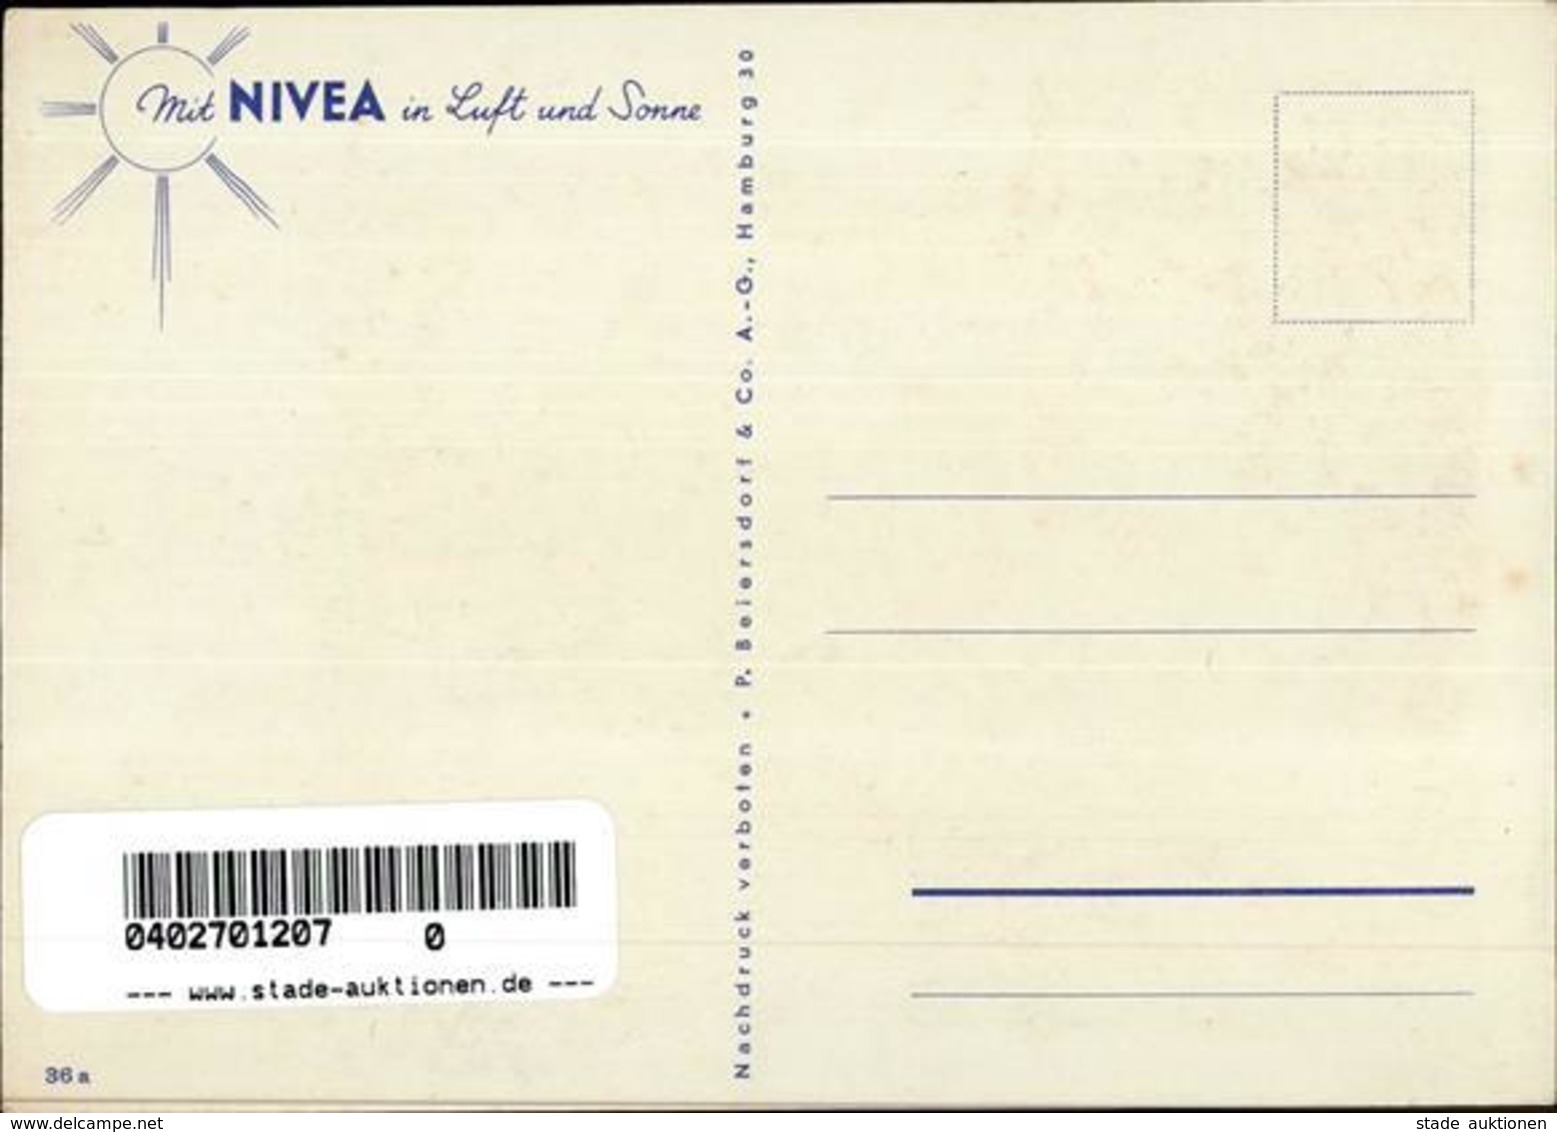 Werbung Kosmetik Nivea Werbe AK I-II Publicite - Werbepostkarten